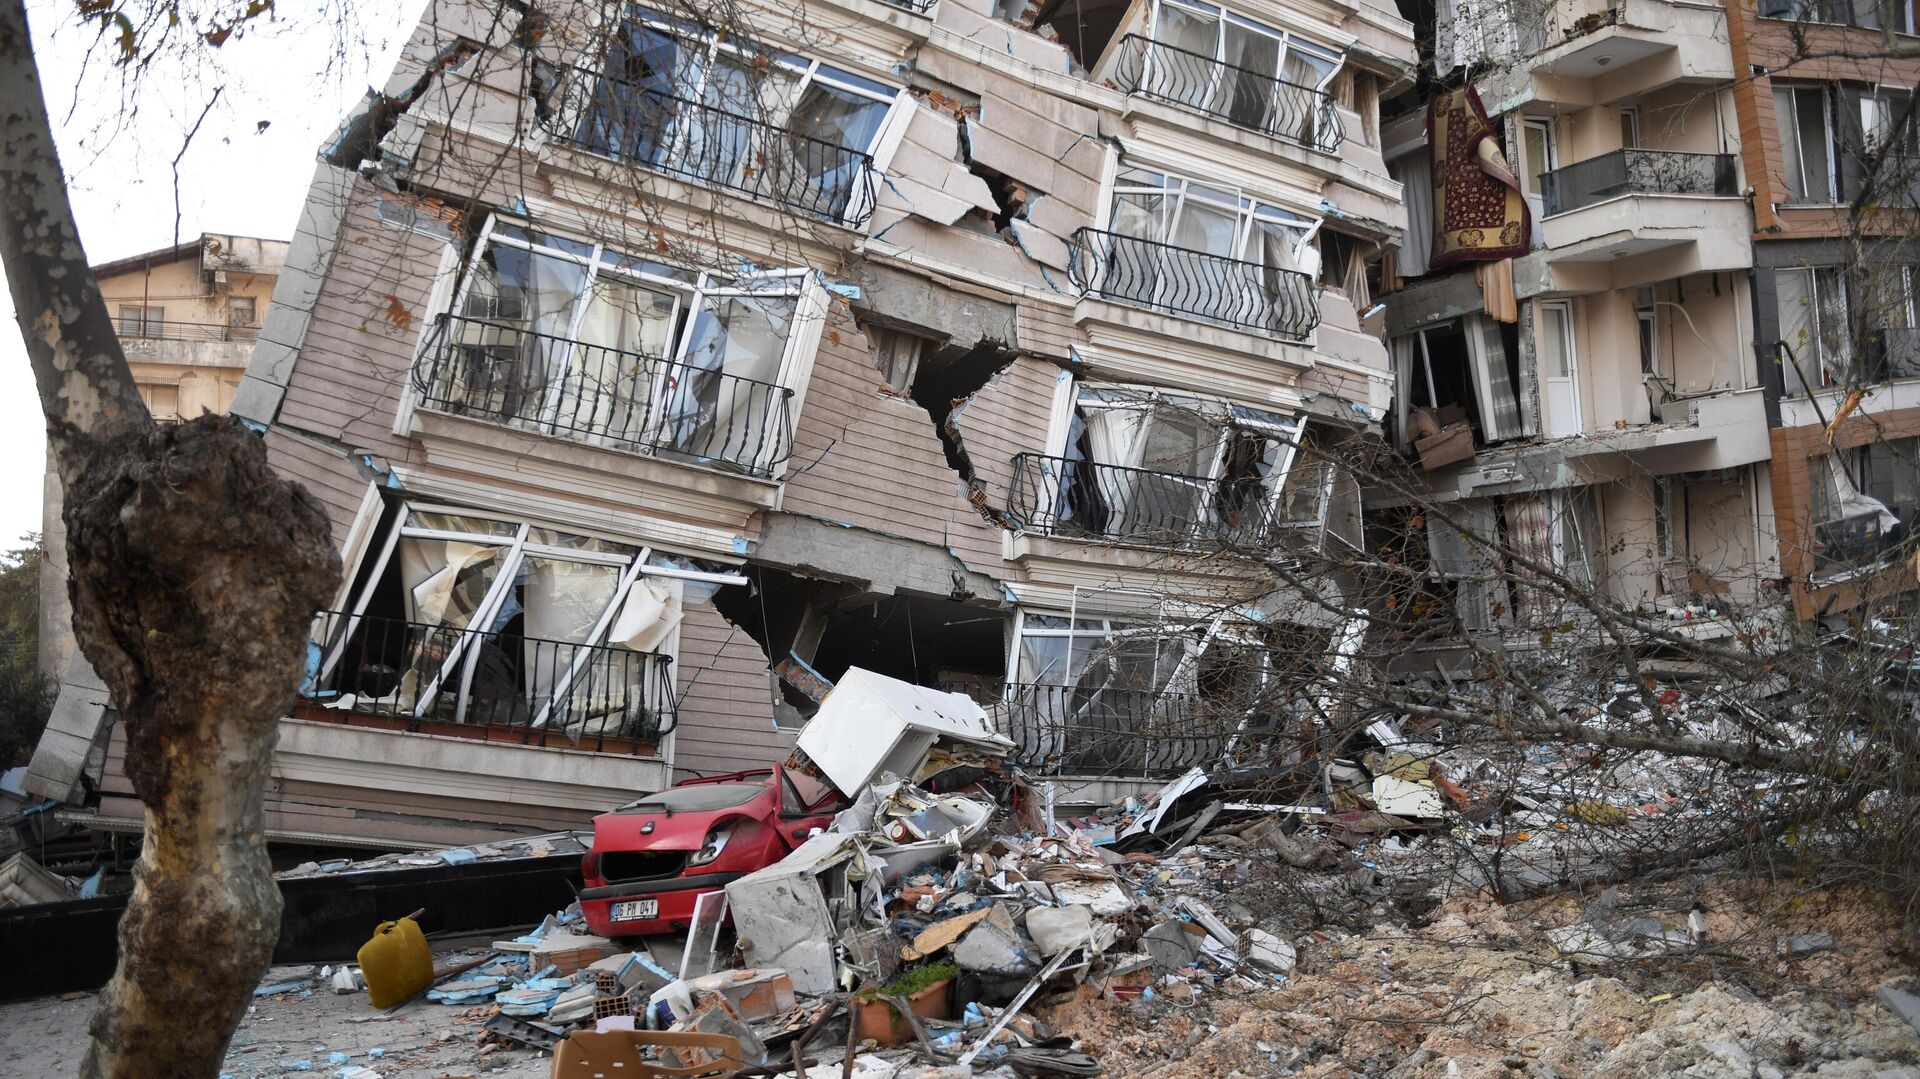 Un terremoto de magnitud 5,6 sacude el este de Turquía | Videos - 27.02.2023, Sputnik Mundo